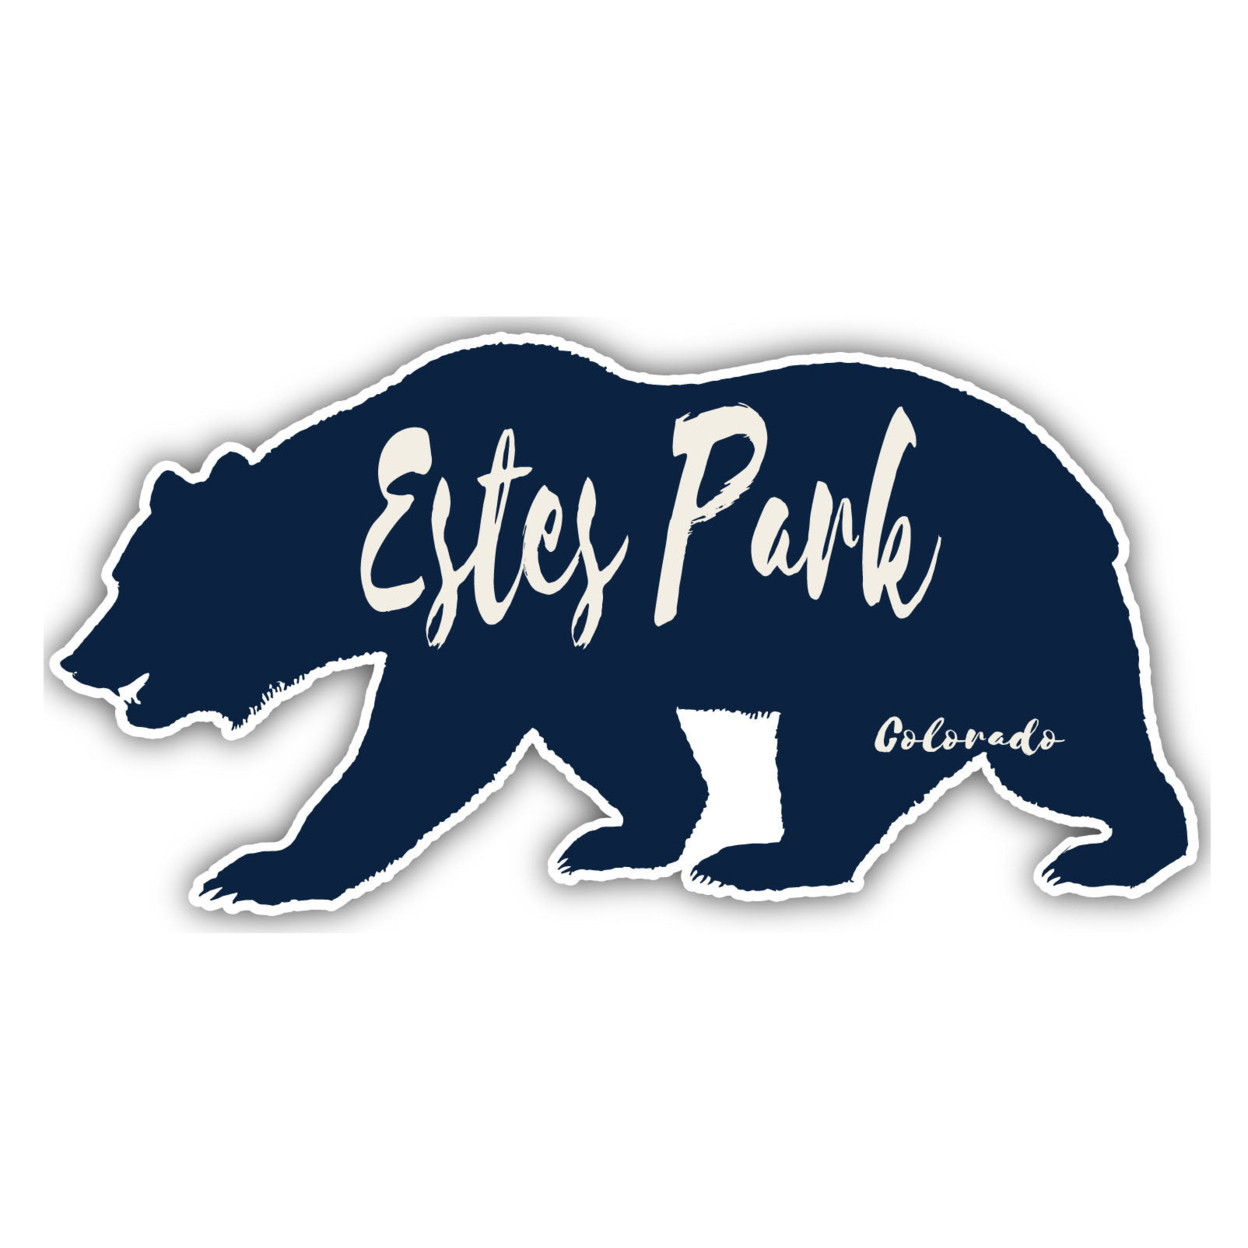 Estes Park Colorado Souvenir Decorative Stickers (Choose Theme And Size) - 4-Pack, 2-Inch, Tent